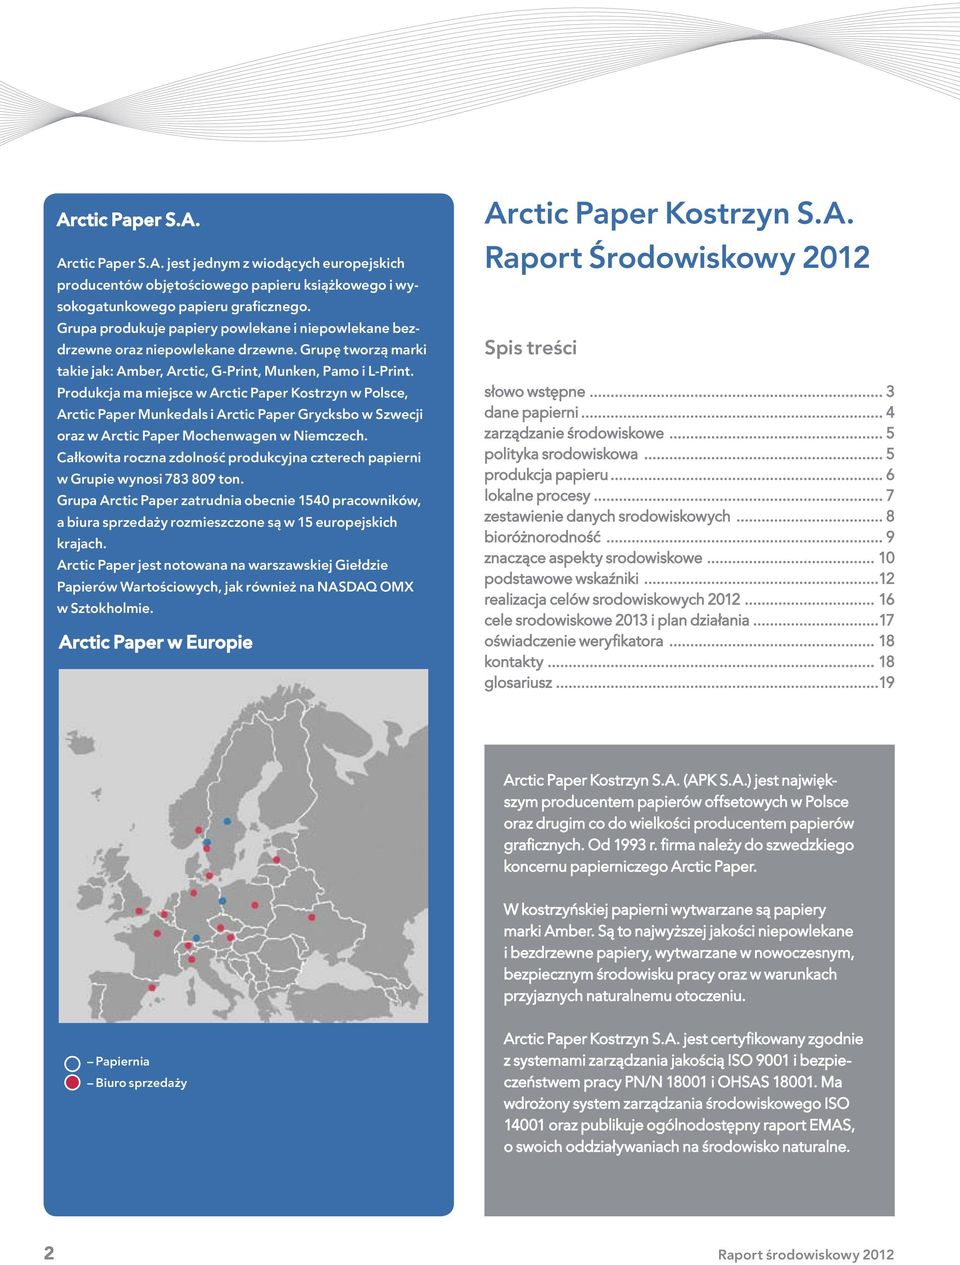 Produkcja ma miejsce w Arctic Paper Kostrzyn w Polsce, Arctic Paper Munkedals i Arctic Paper Grycksbo w Szwecji oraz w Arctic Paper Mochenwagen w Niemczech.